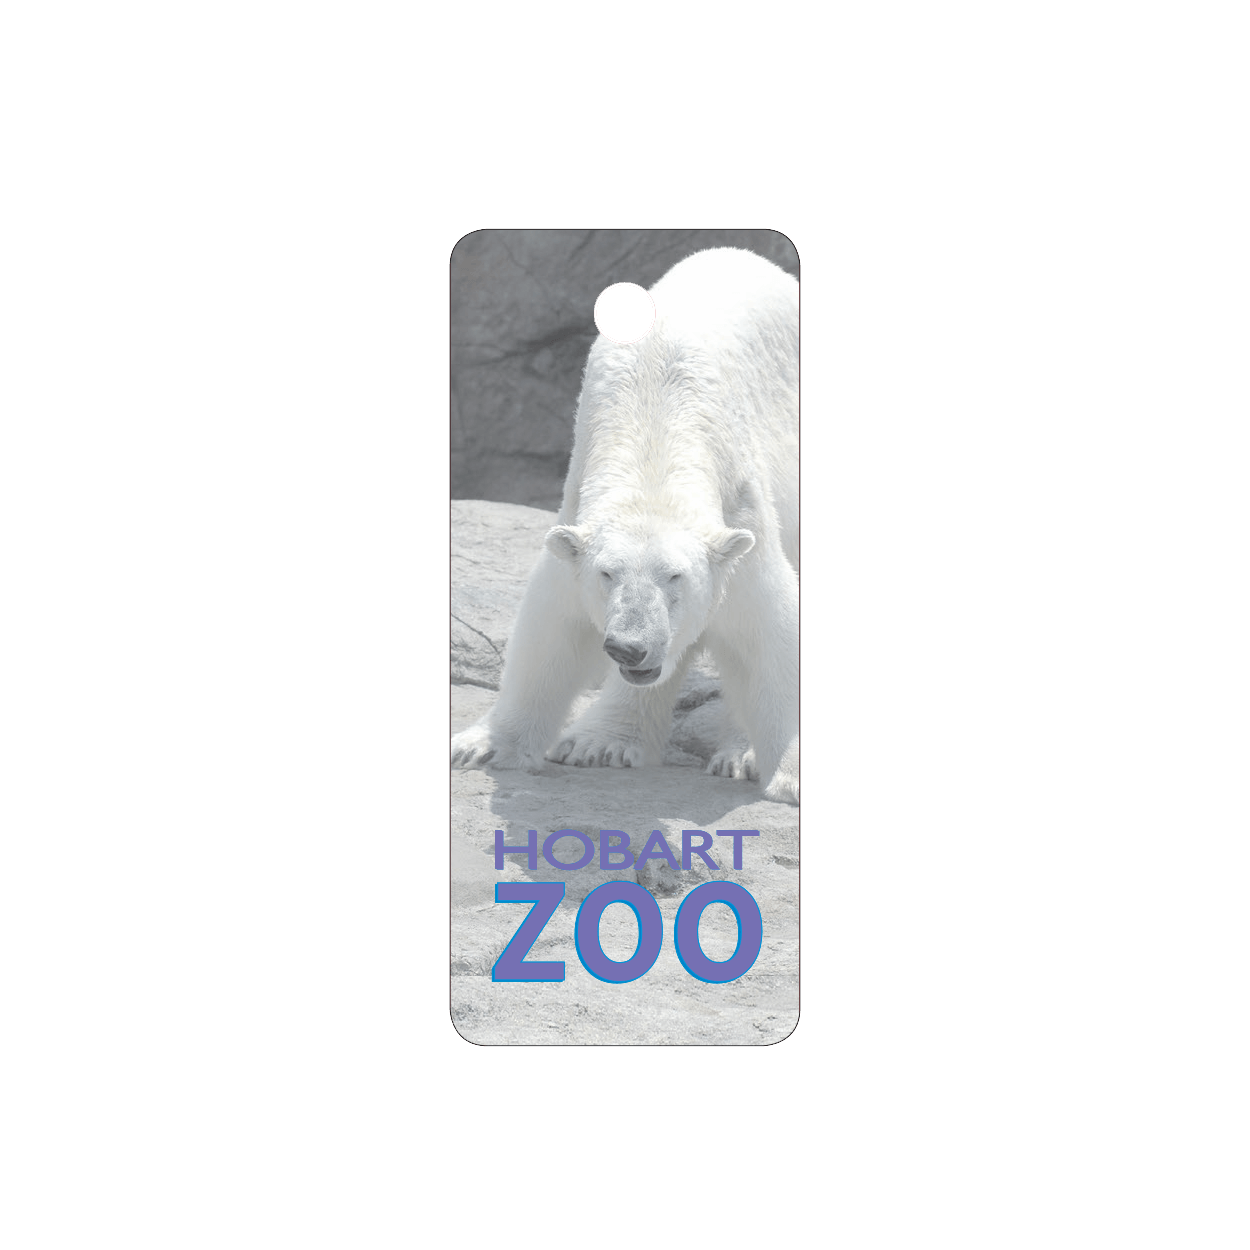 Hobart Zoo Key Tag